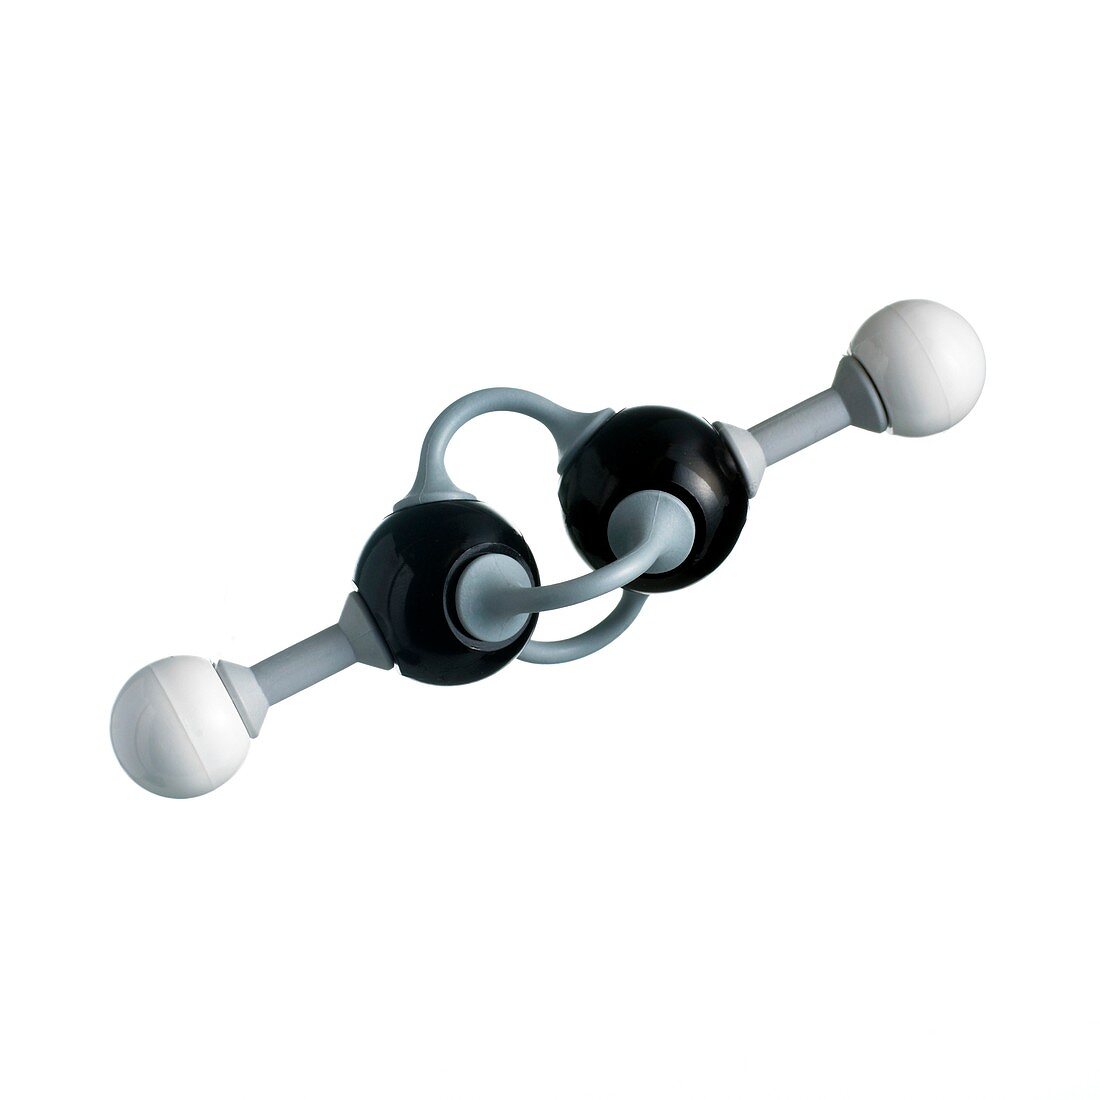 Ethyne molecule